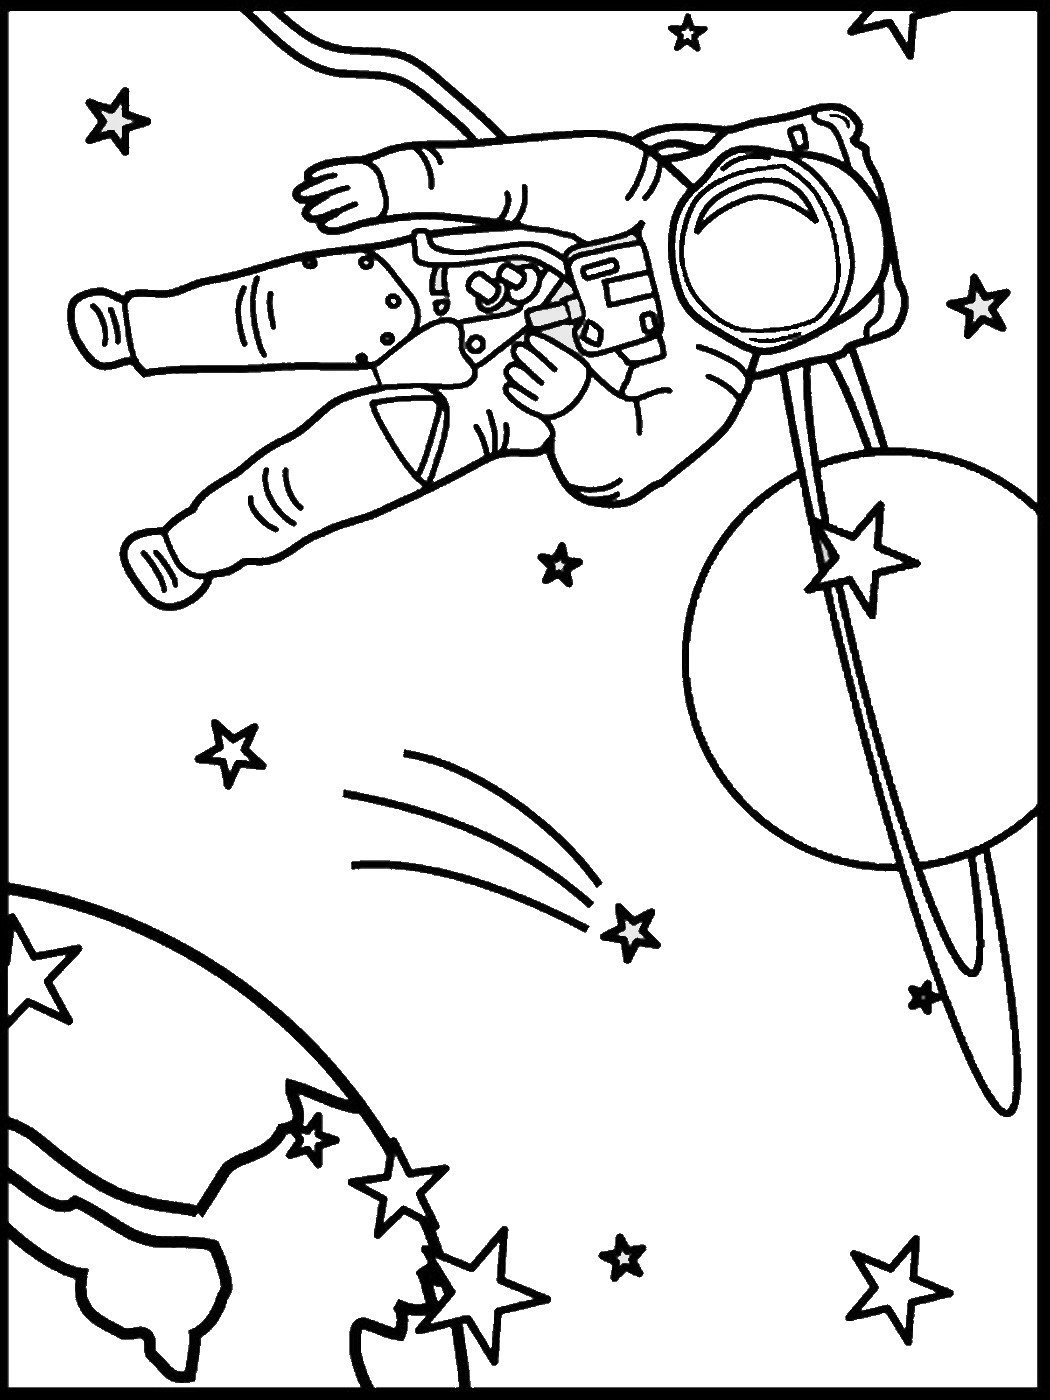 Раскраски 12 апреля день космонавтики для детей. Космос раскраска для детей. Раскраска день космонавтики для детей. Раскраска. В космосе. Рисунок ко Дню космонавтики раскраска.